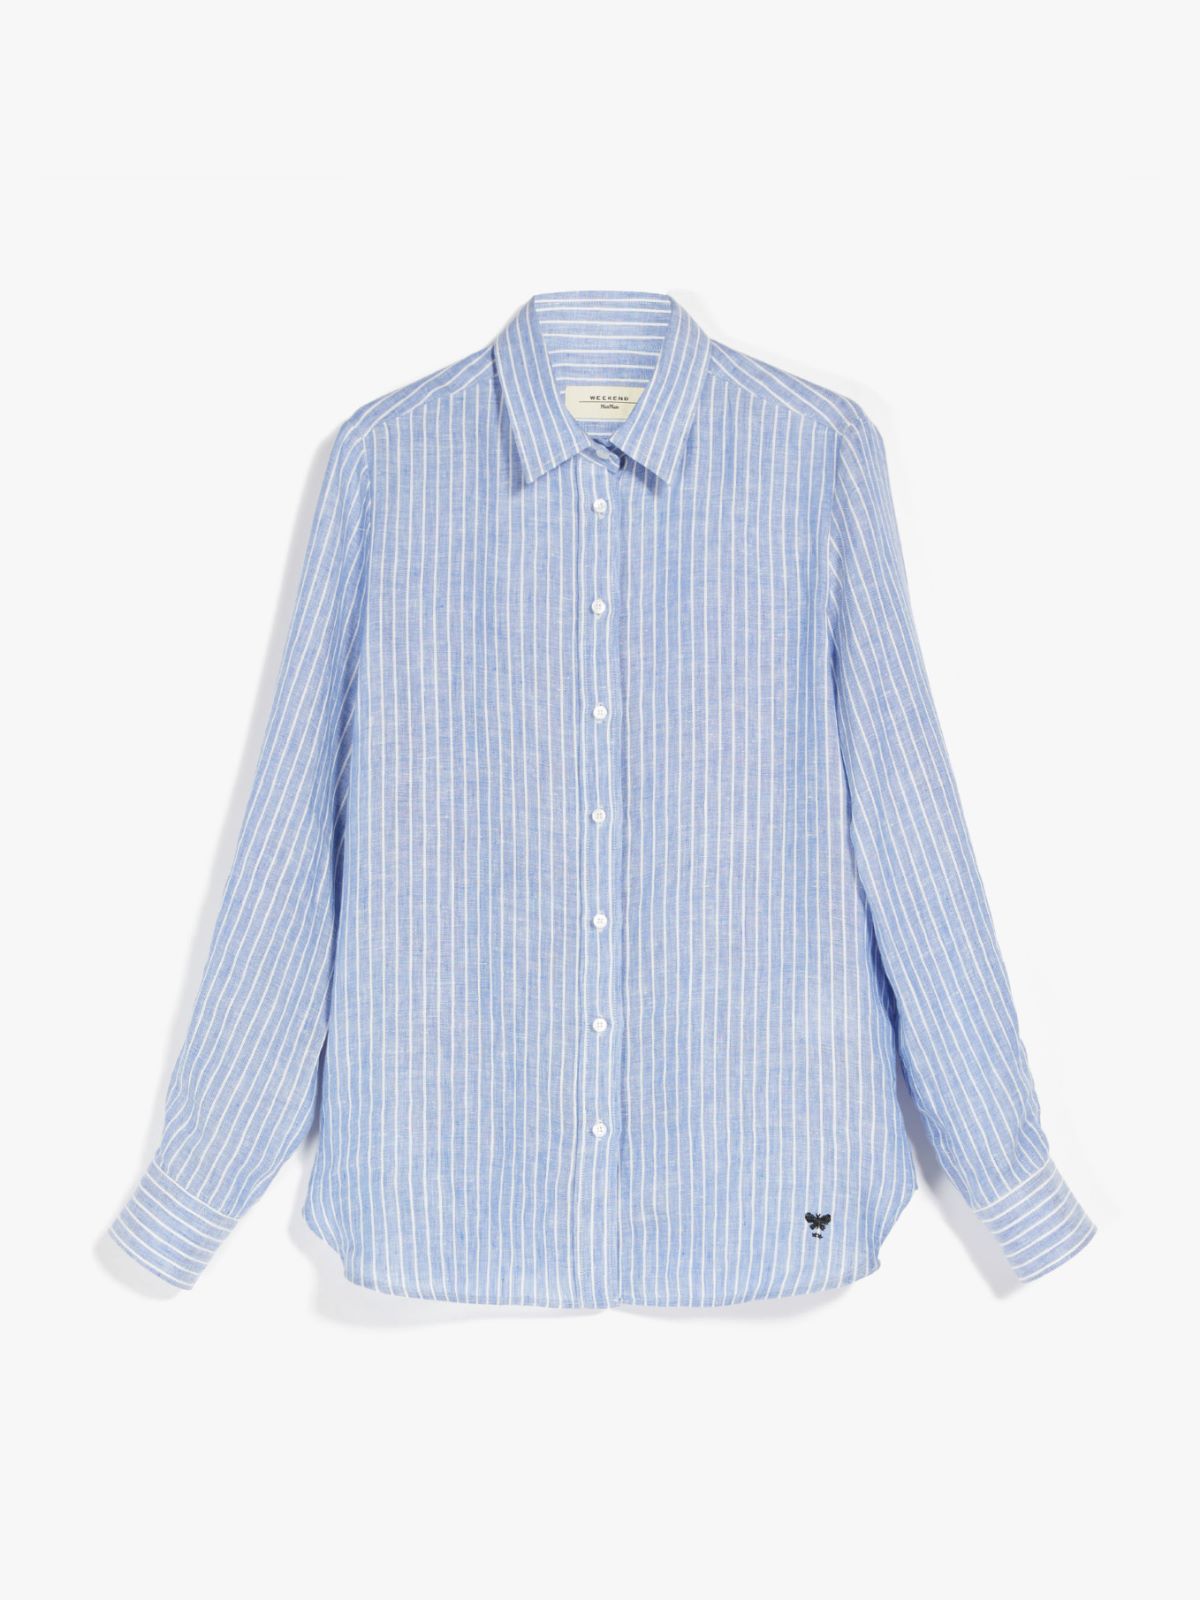 Linen fabric shirt - NAVY - Weekend Max Mara - 6